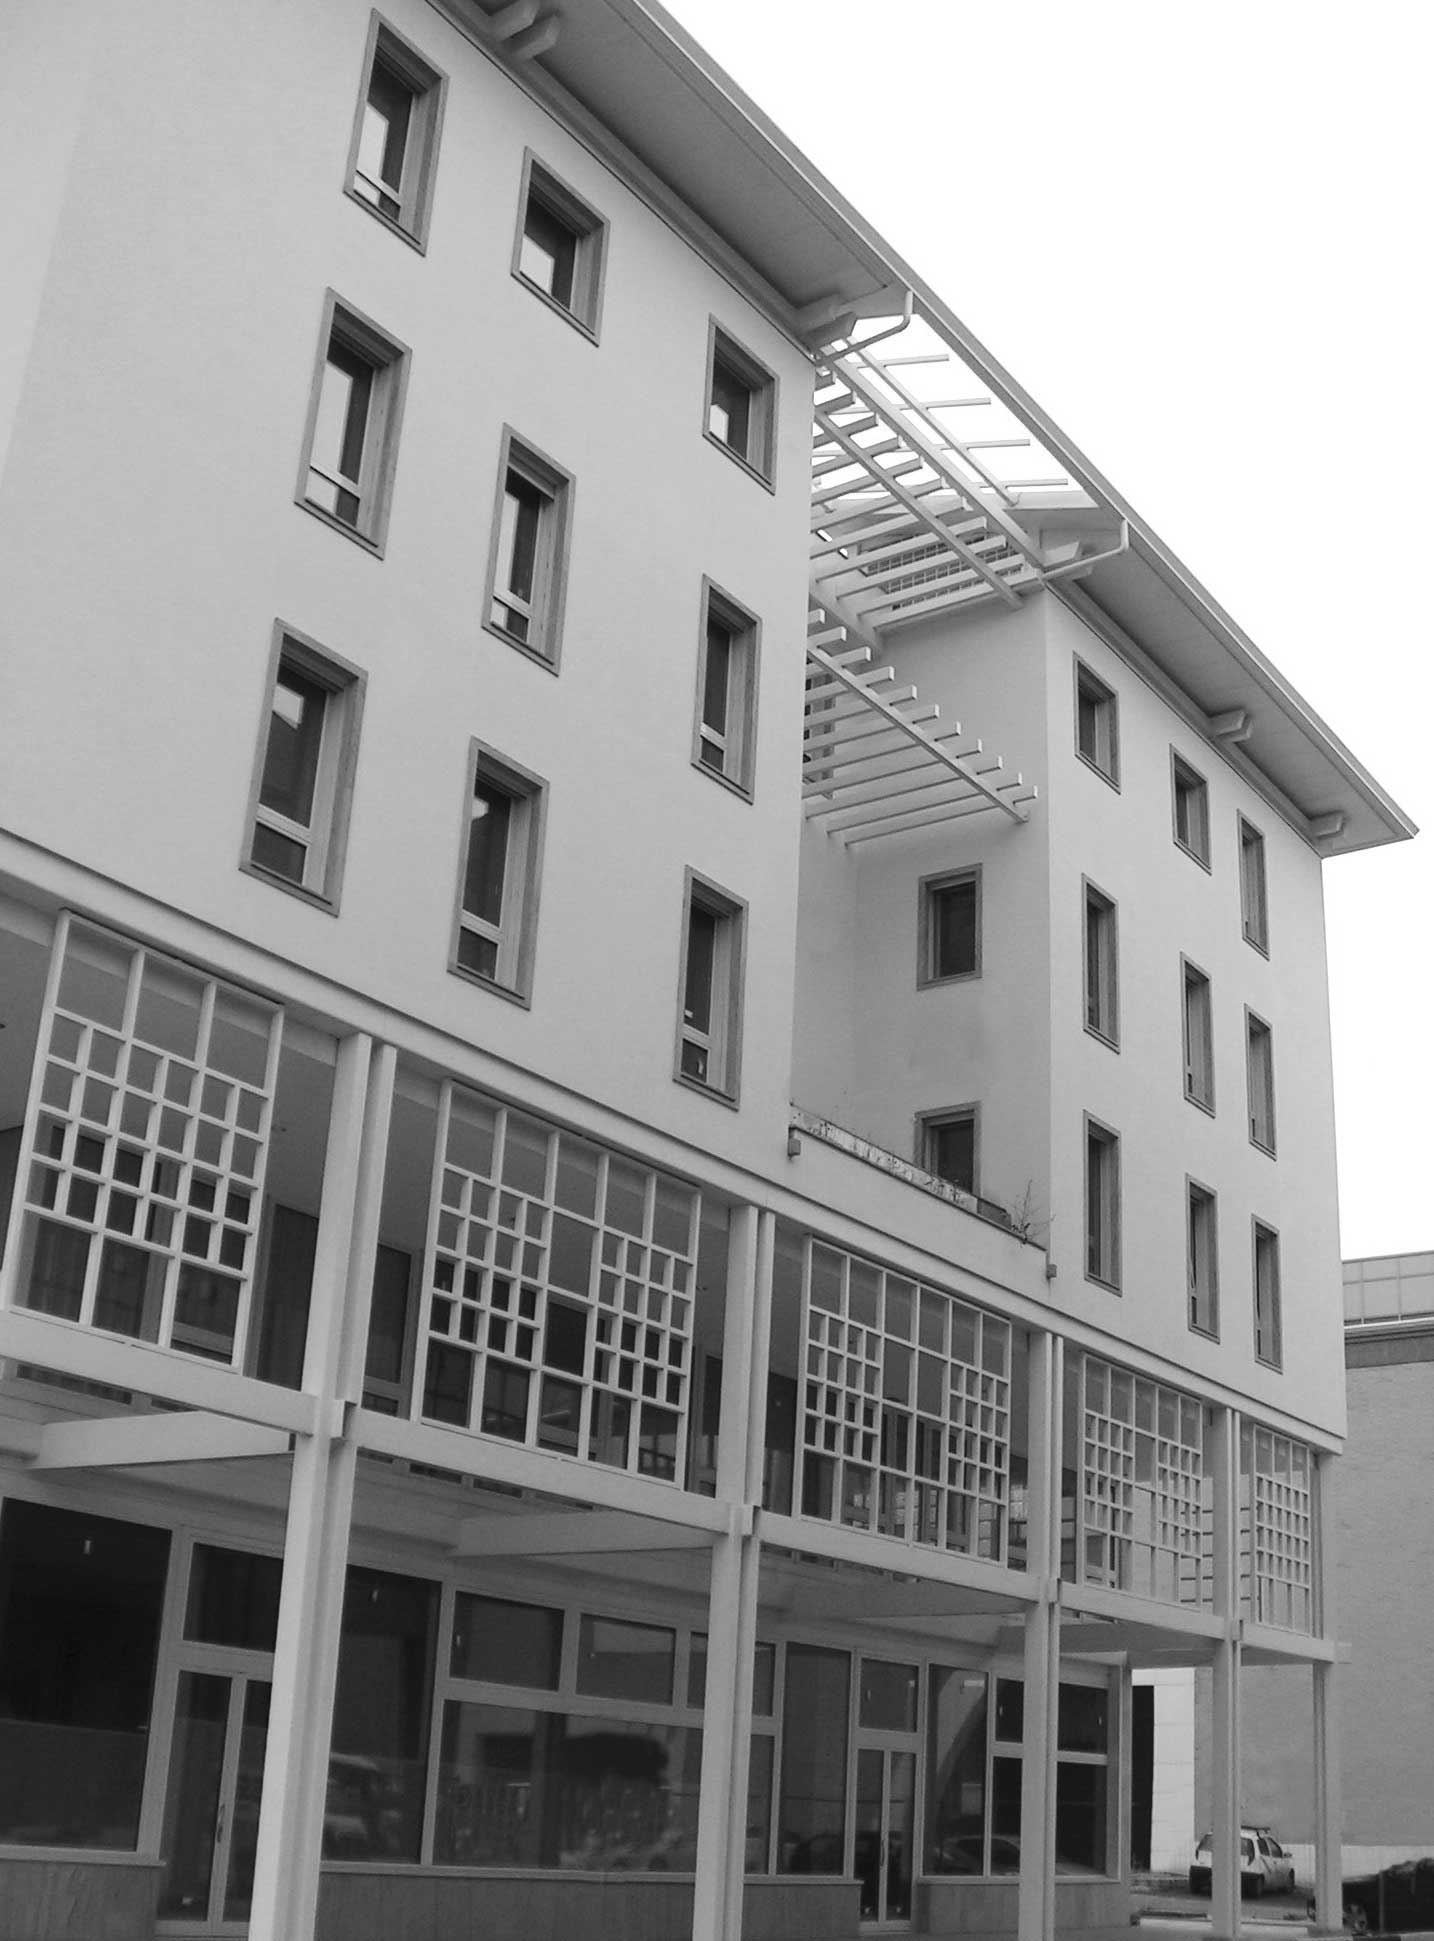 39 - Piano di Recupero ed edifici  UMI C7 e UMI H22 a destinazione residenziale e commerciale nel PdR dell’ex area Fiat, Firenze - Novoli - Vista esterna